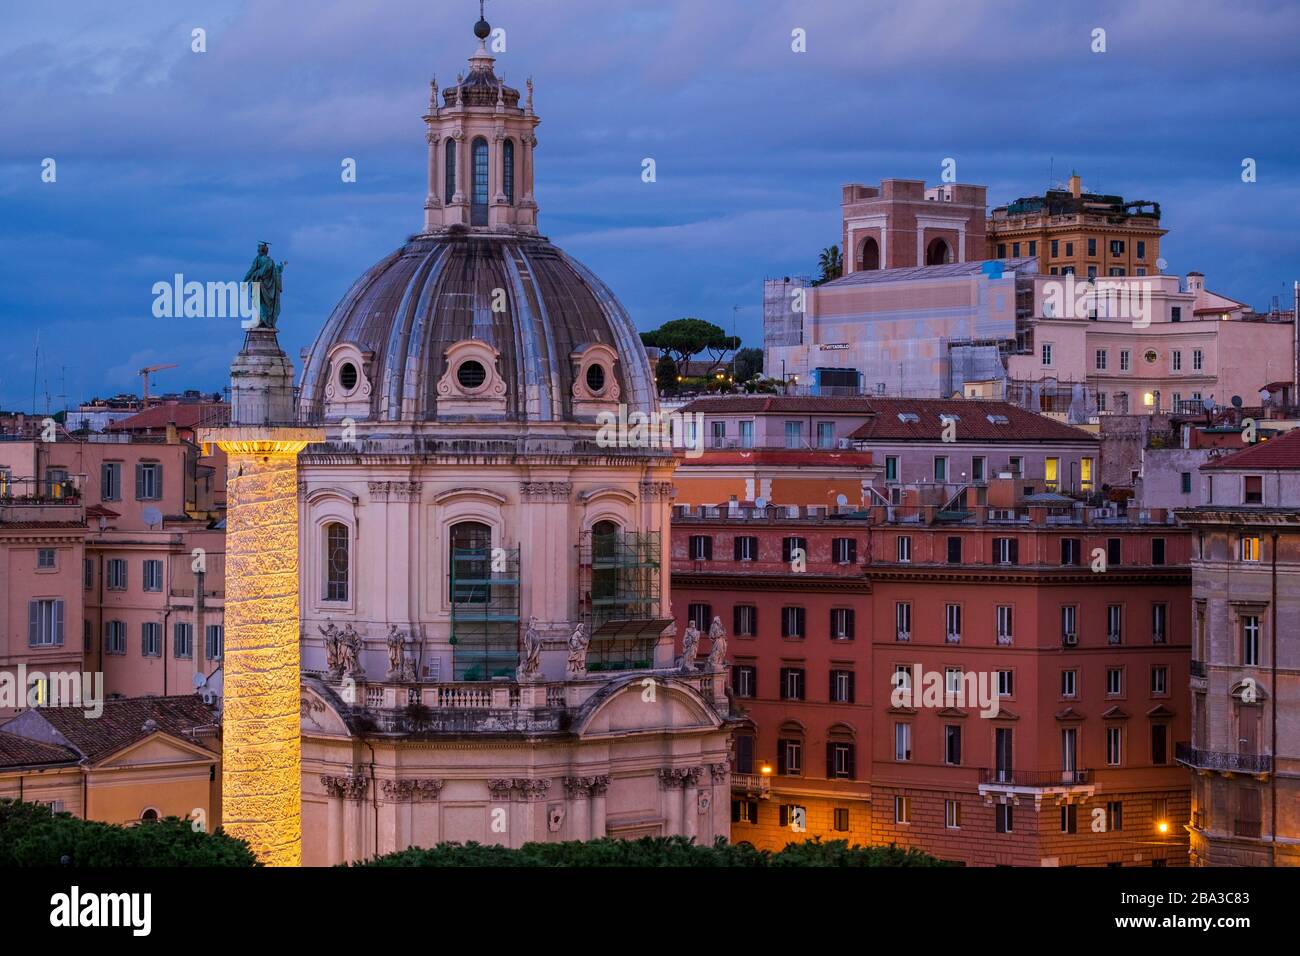 VIew of Trajan's column illuminated. Rome, Italy Stock Photo